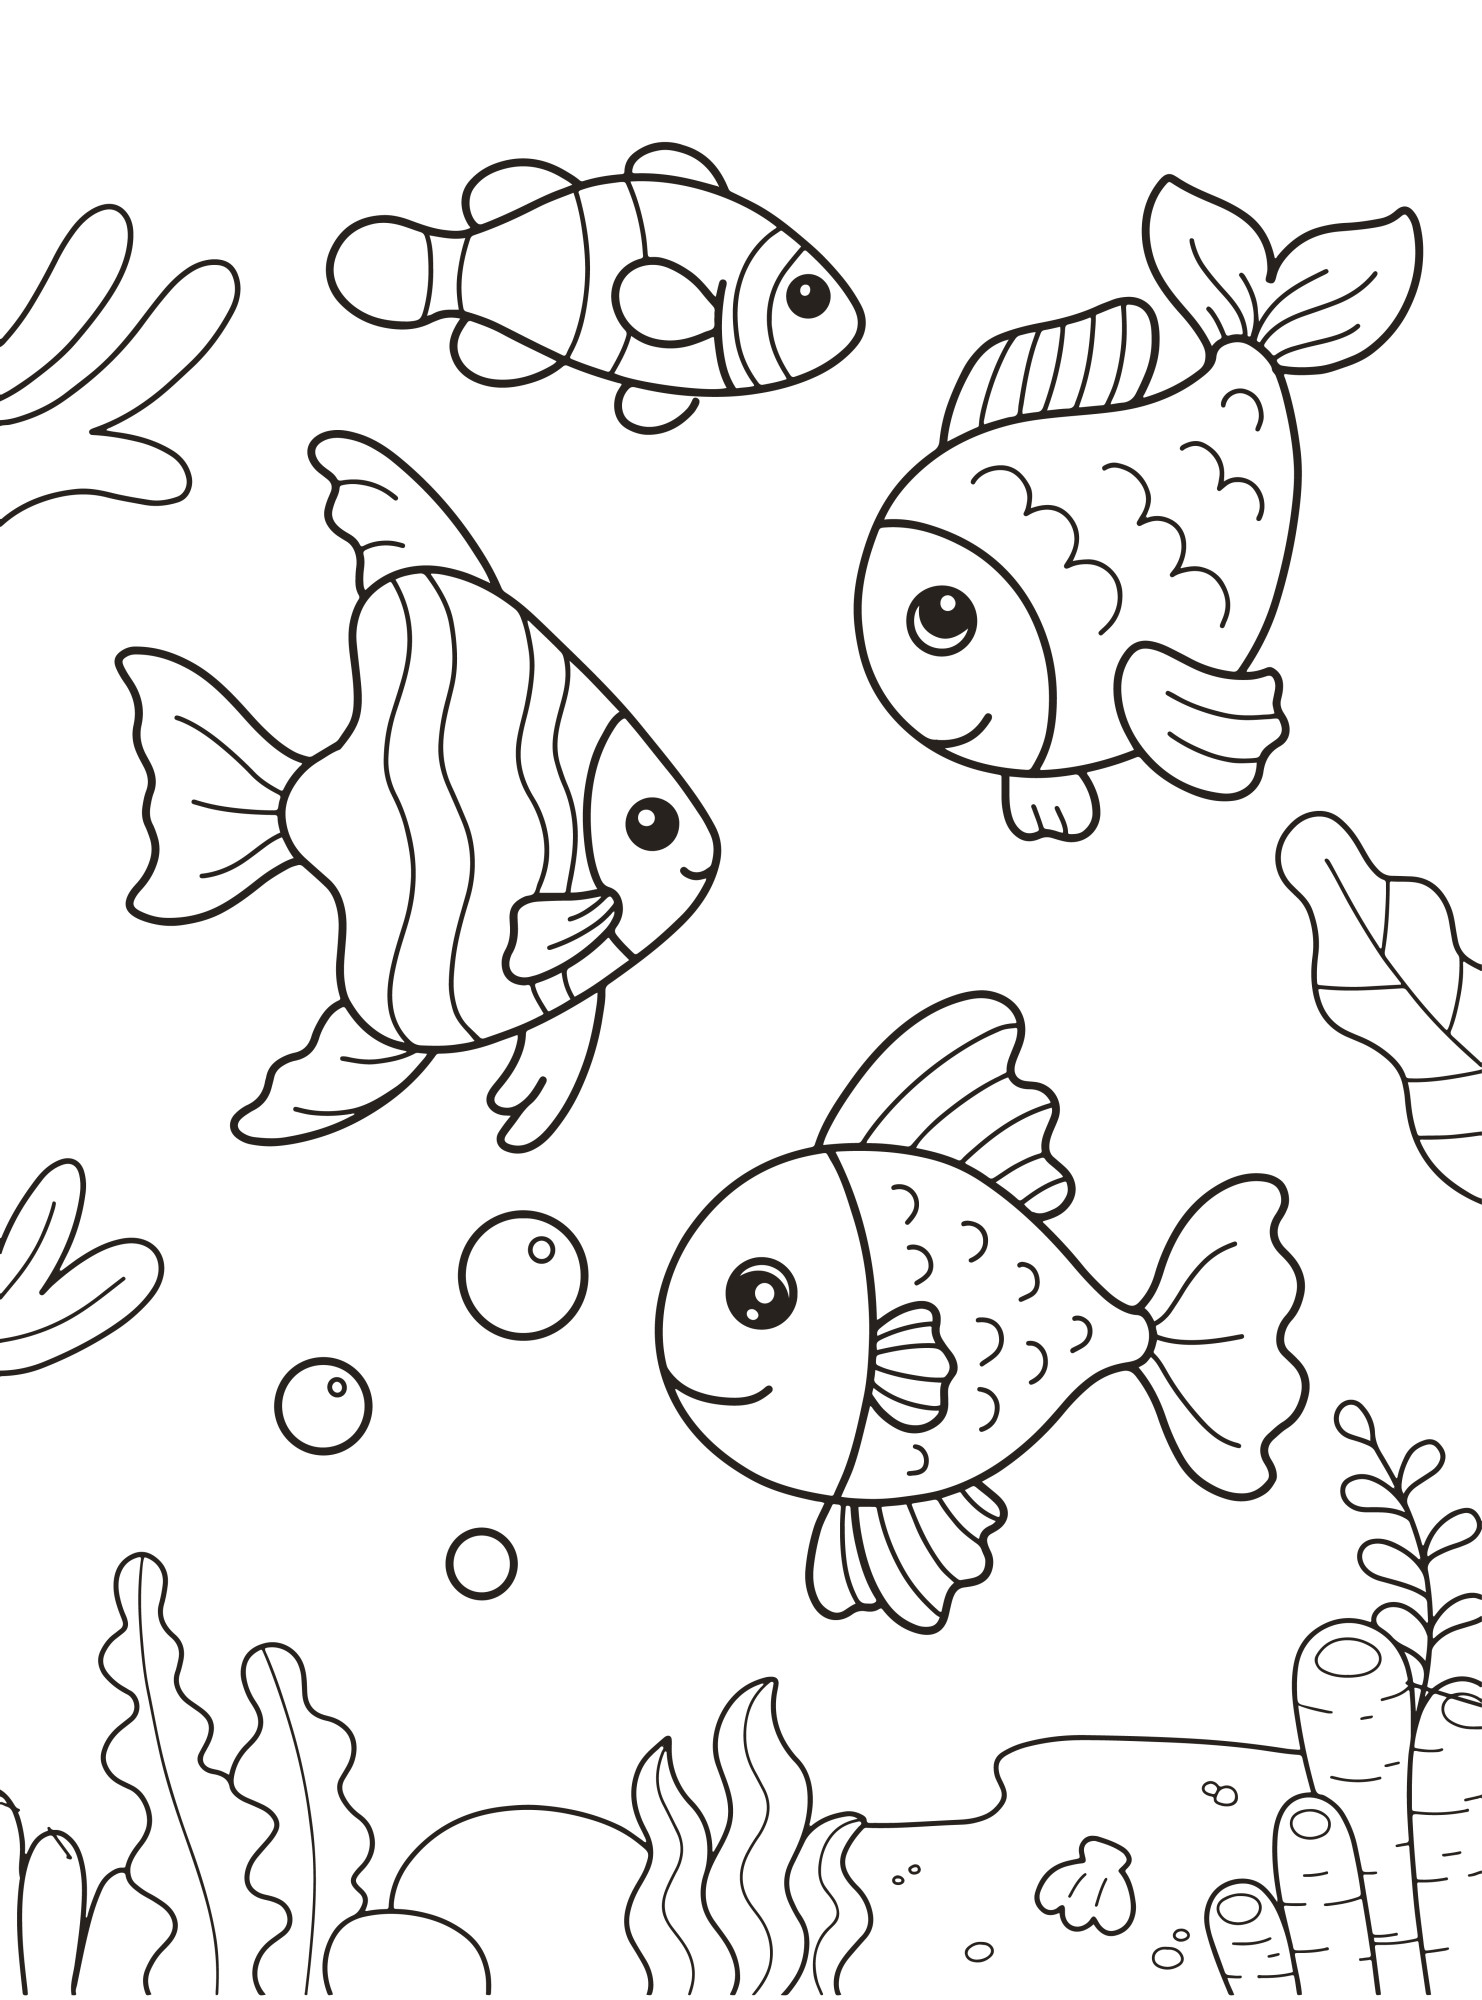 Раскраска для детей: рыбки плавают в озере